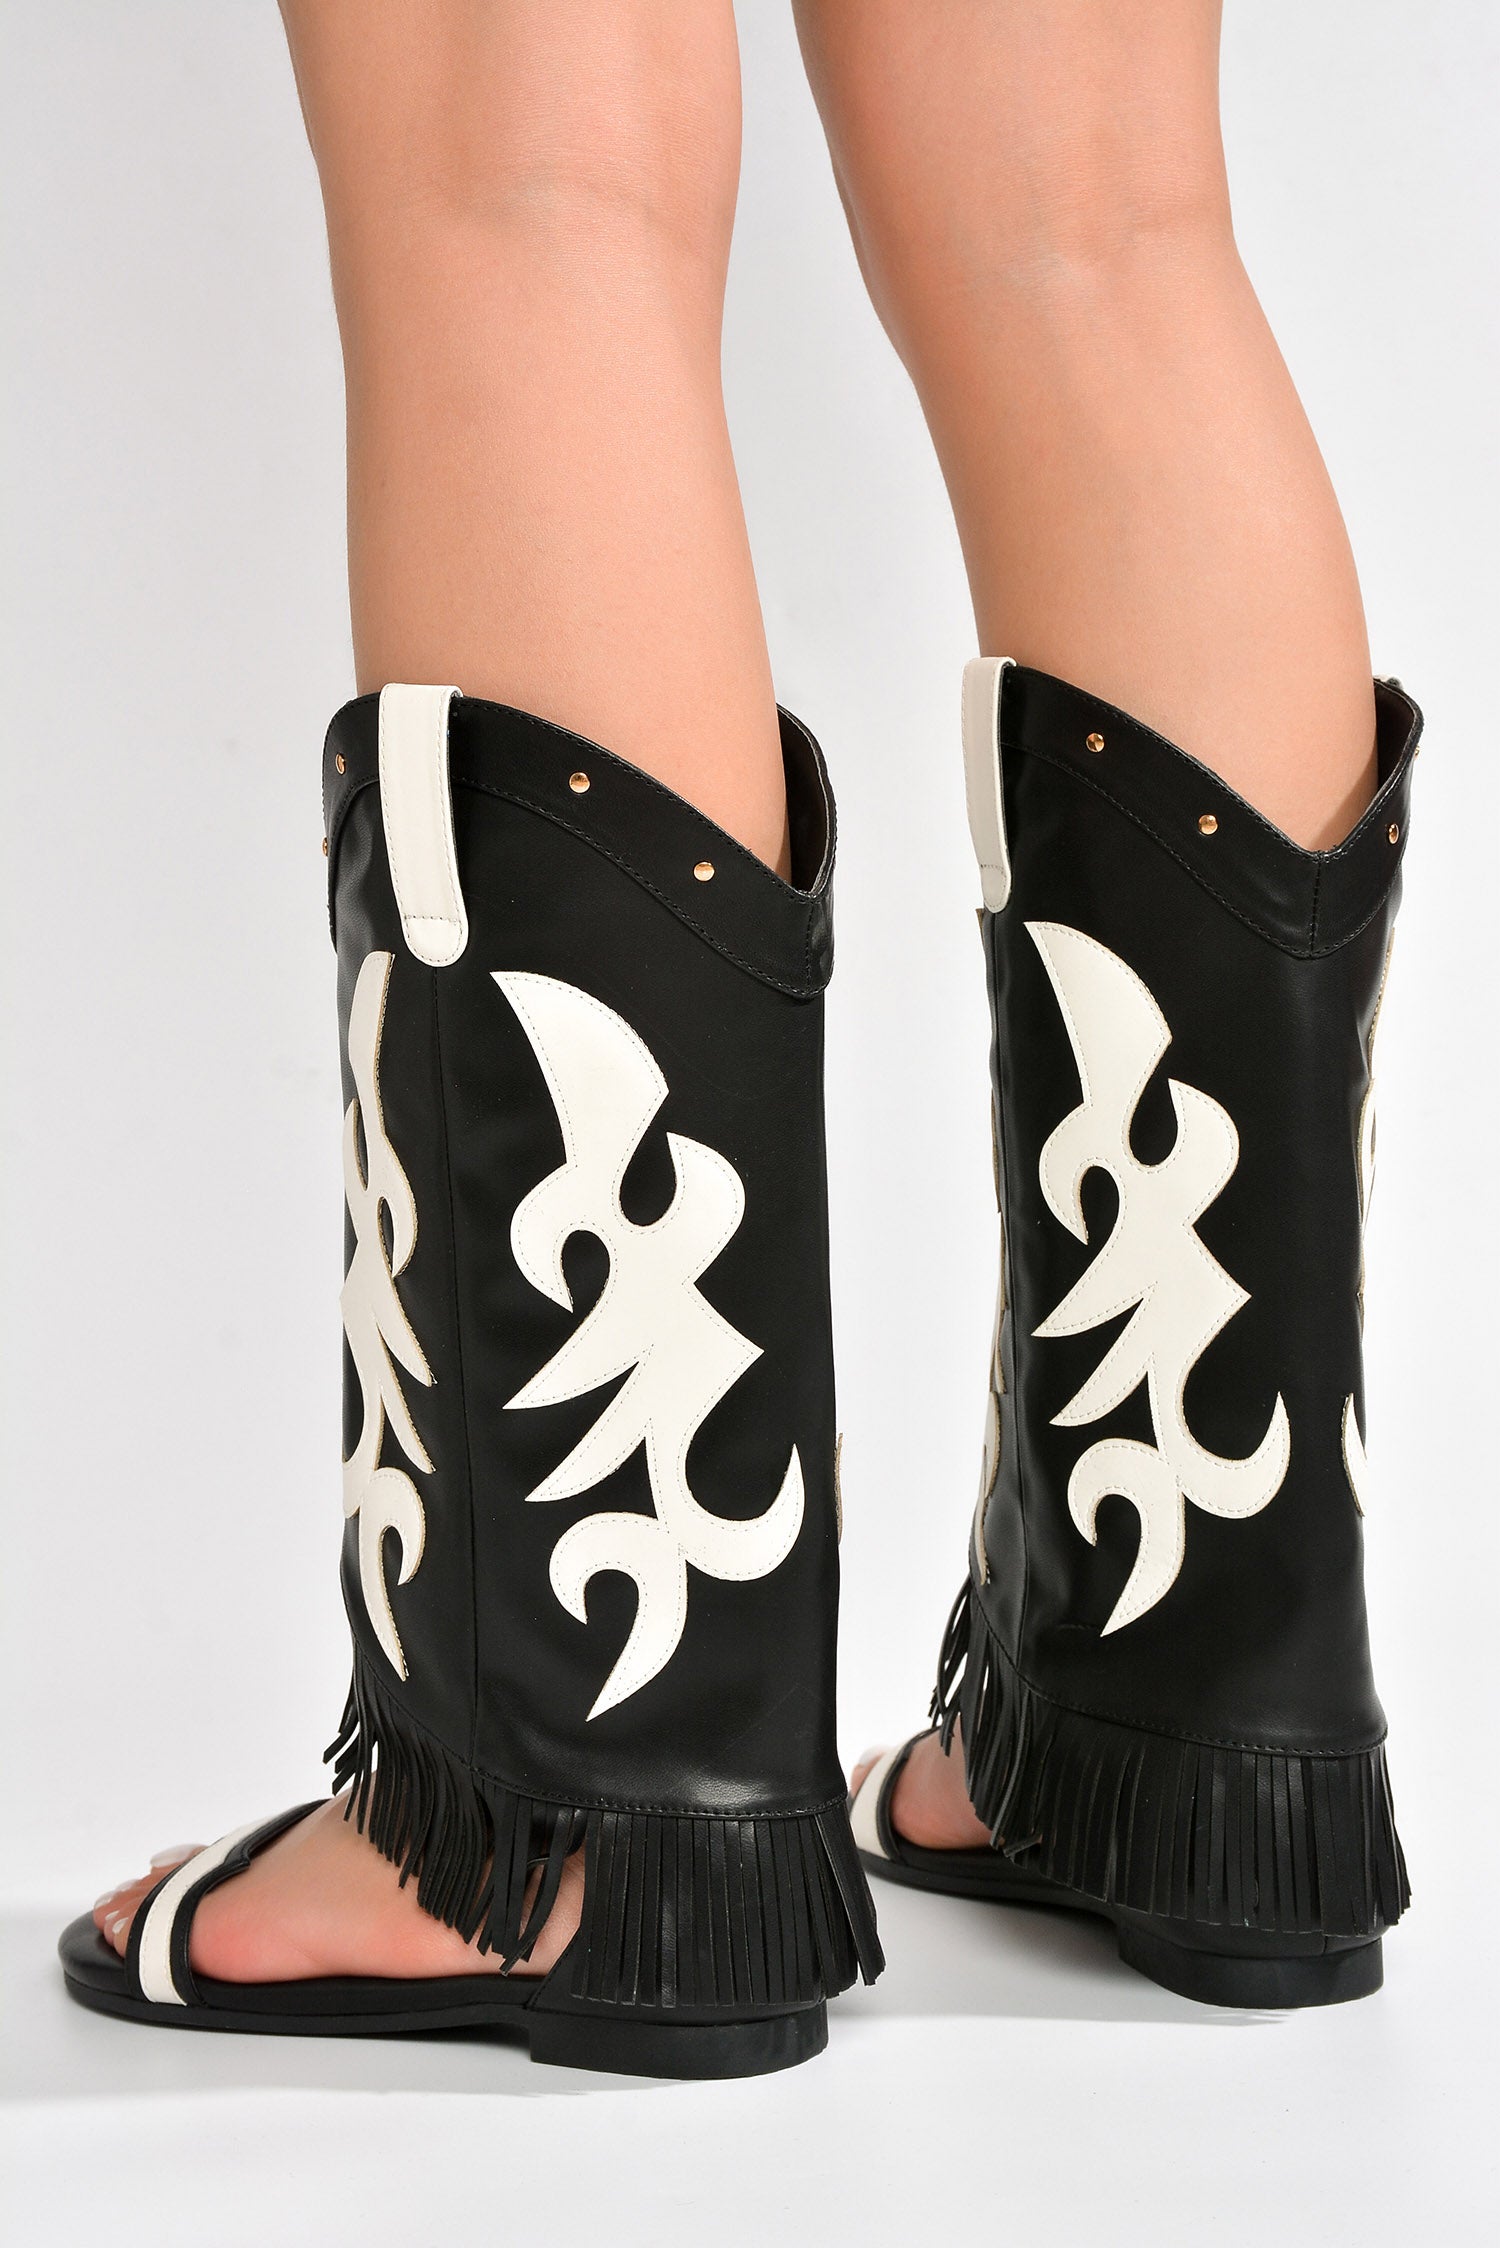 UrbanOG - Collins Fringe Western-Inspired Flat Sandals - SANDALS